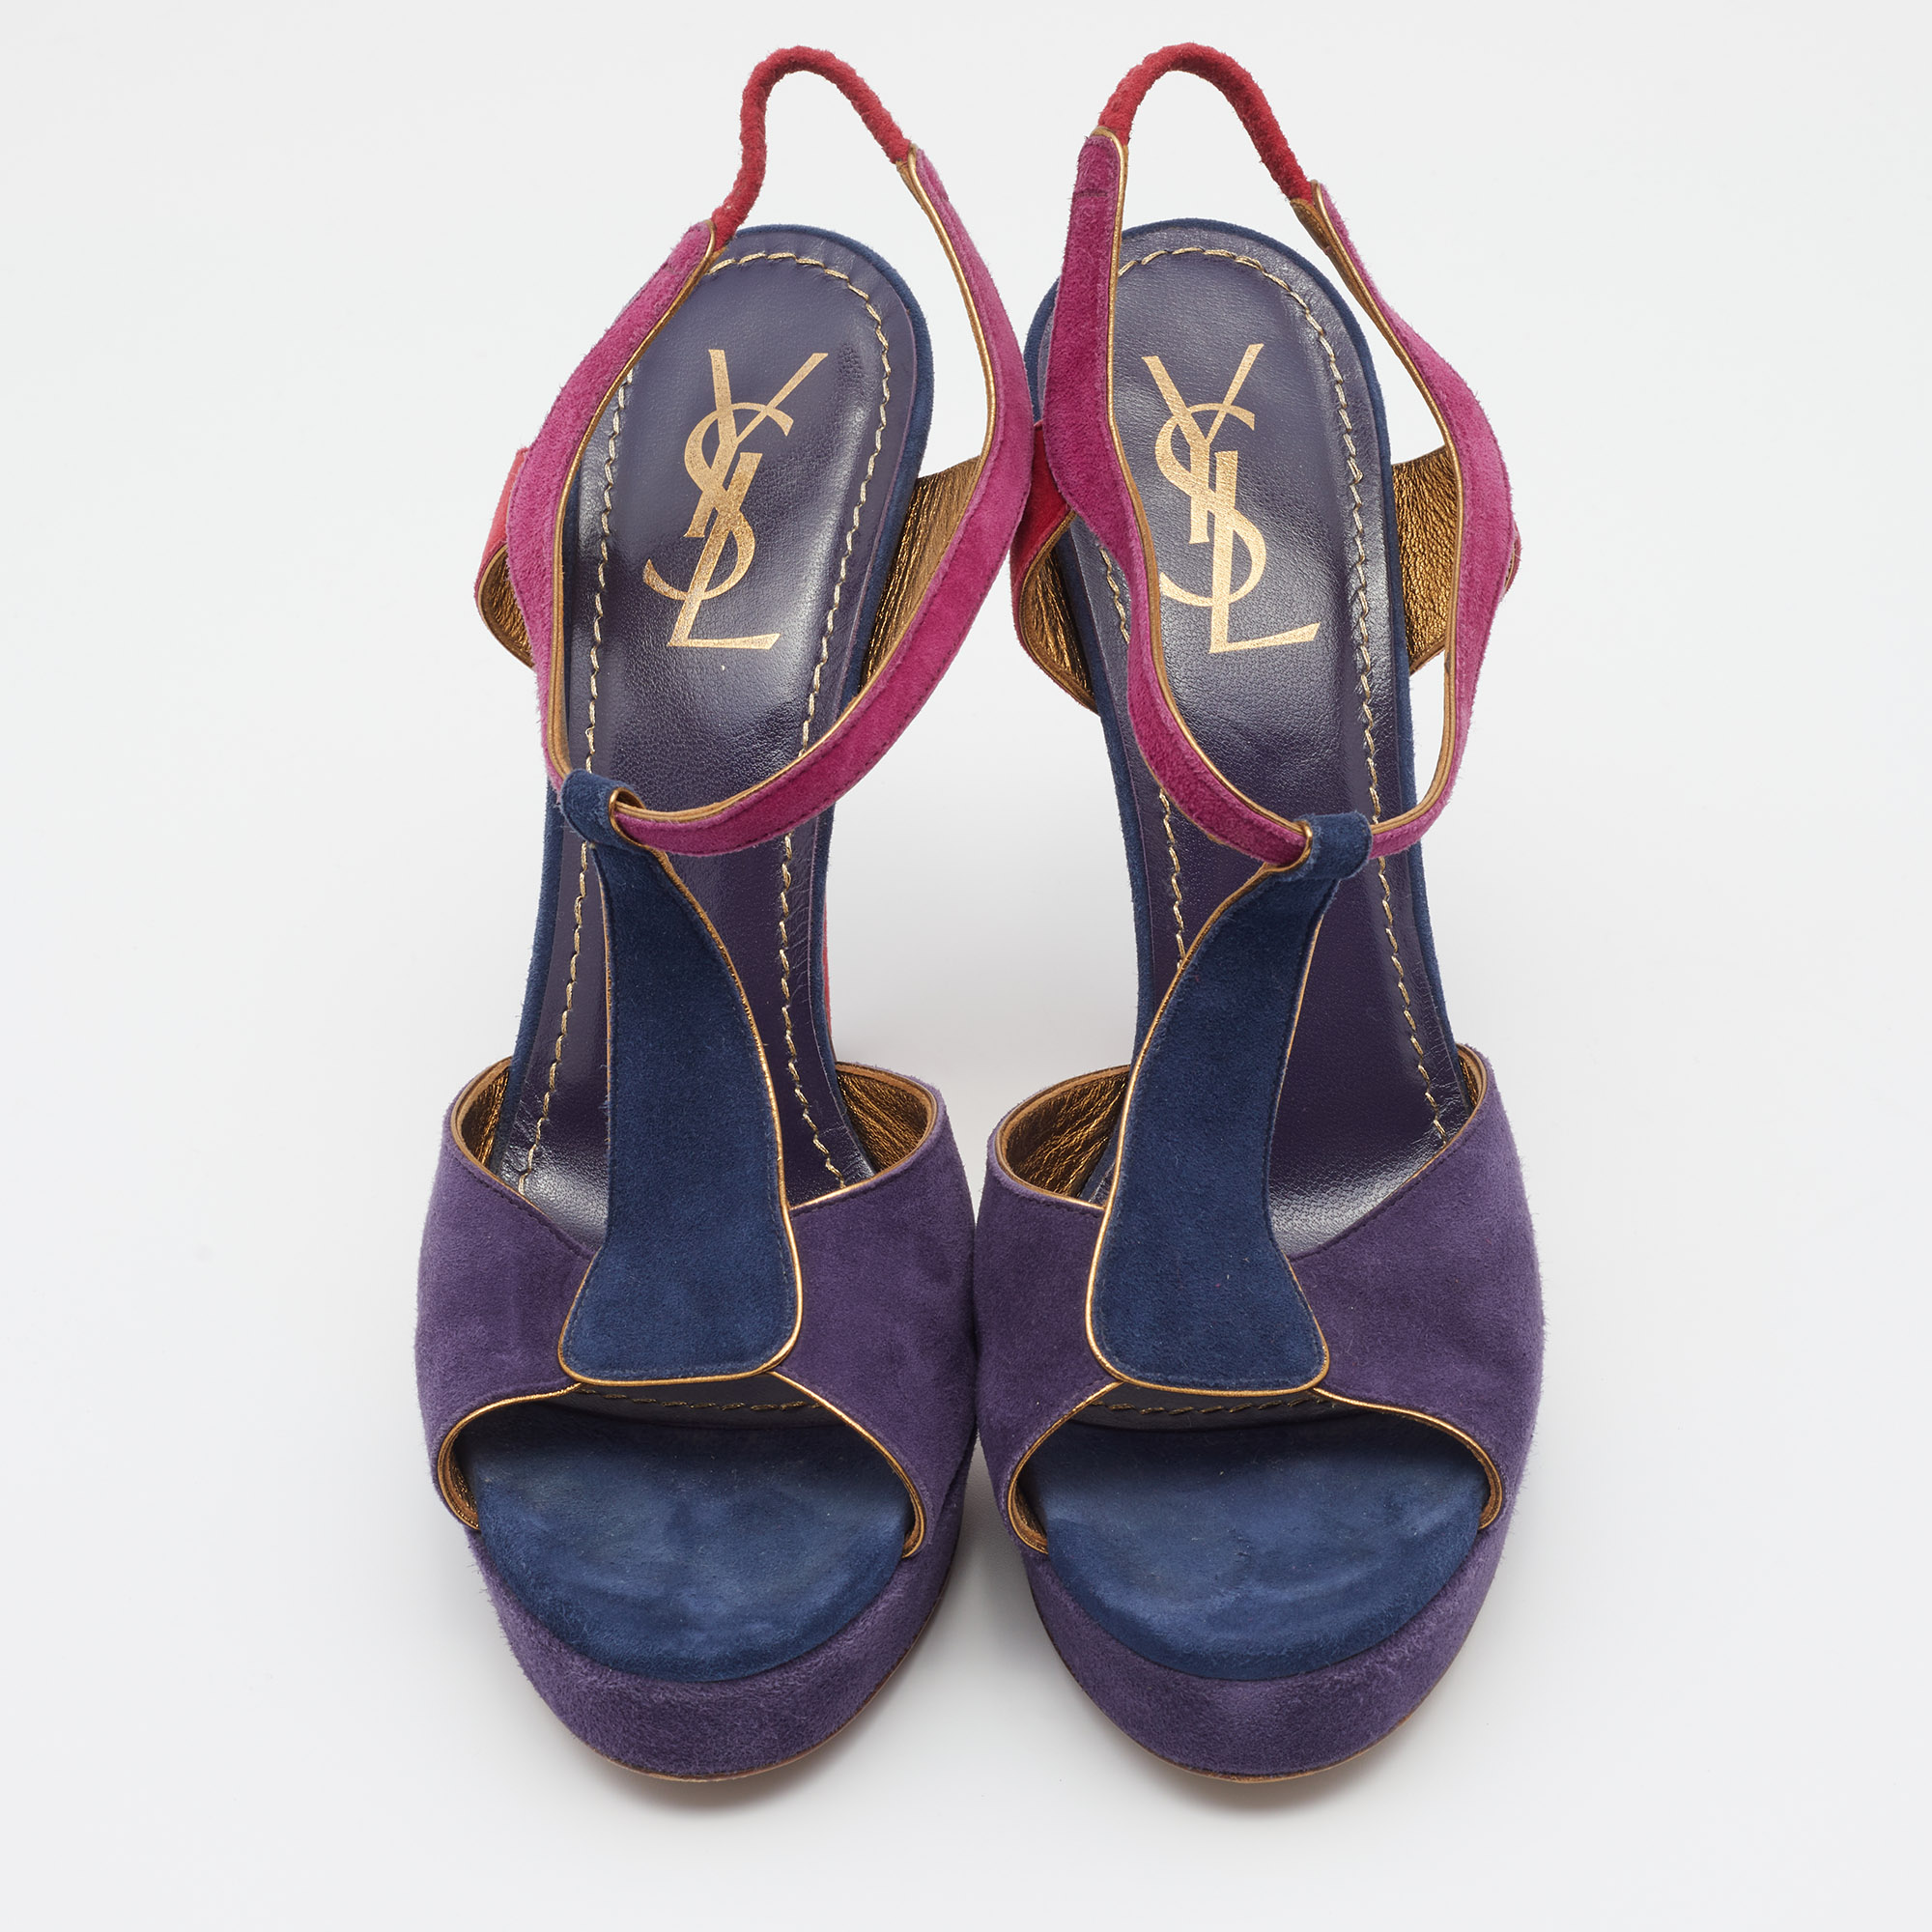 Yves Saint Laurent Multicolor Suede Slingback Platform Sandals Size 39.5